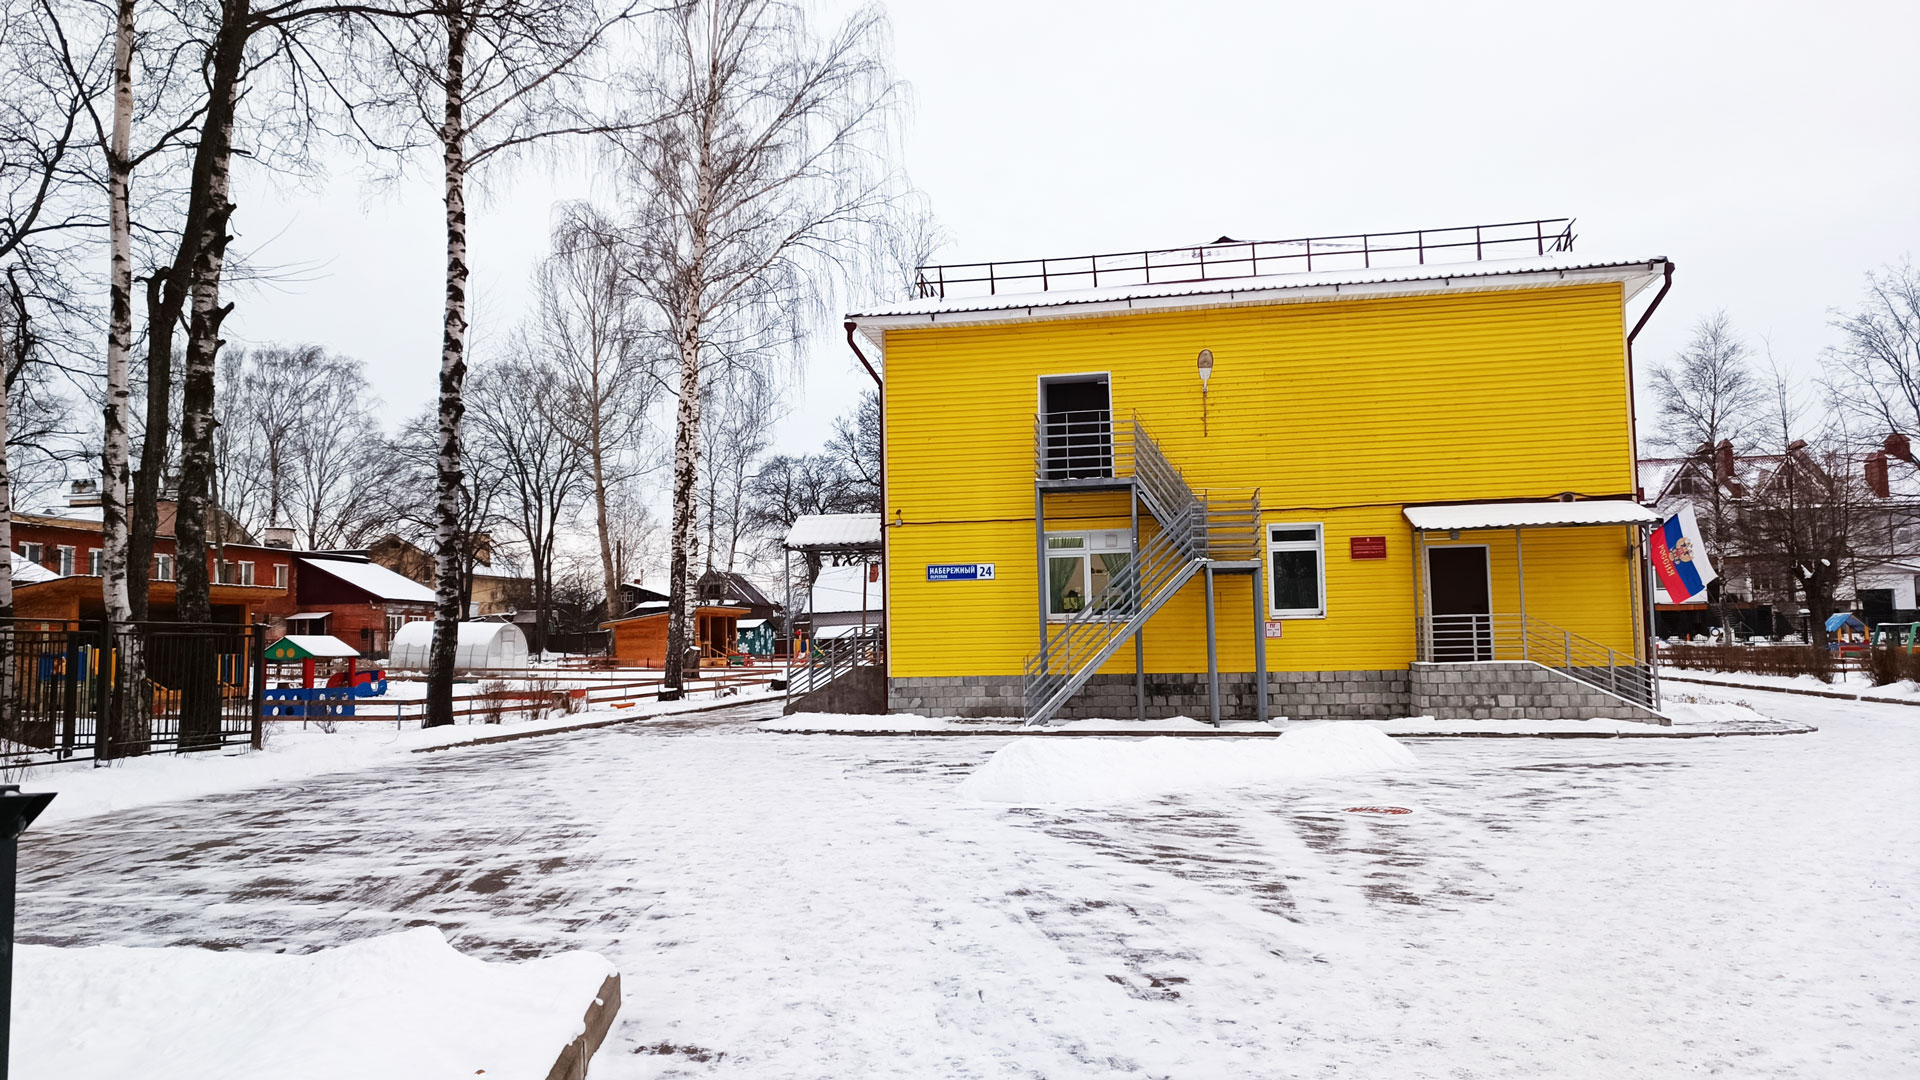 Детский сад 173 Ярославль: общий вид здания и территории.